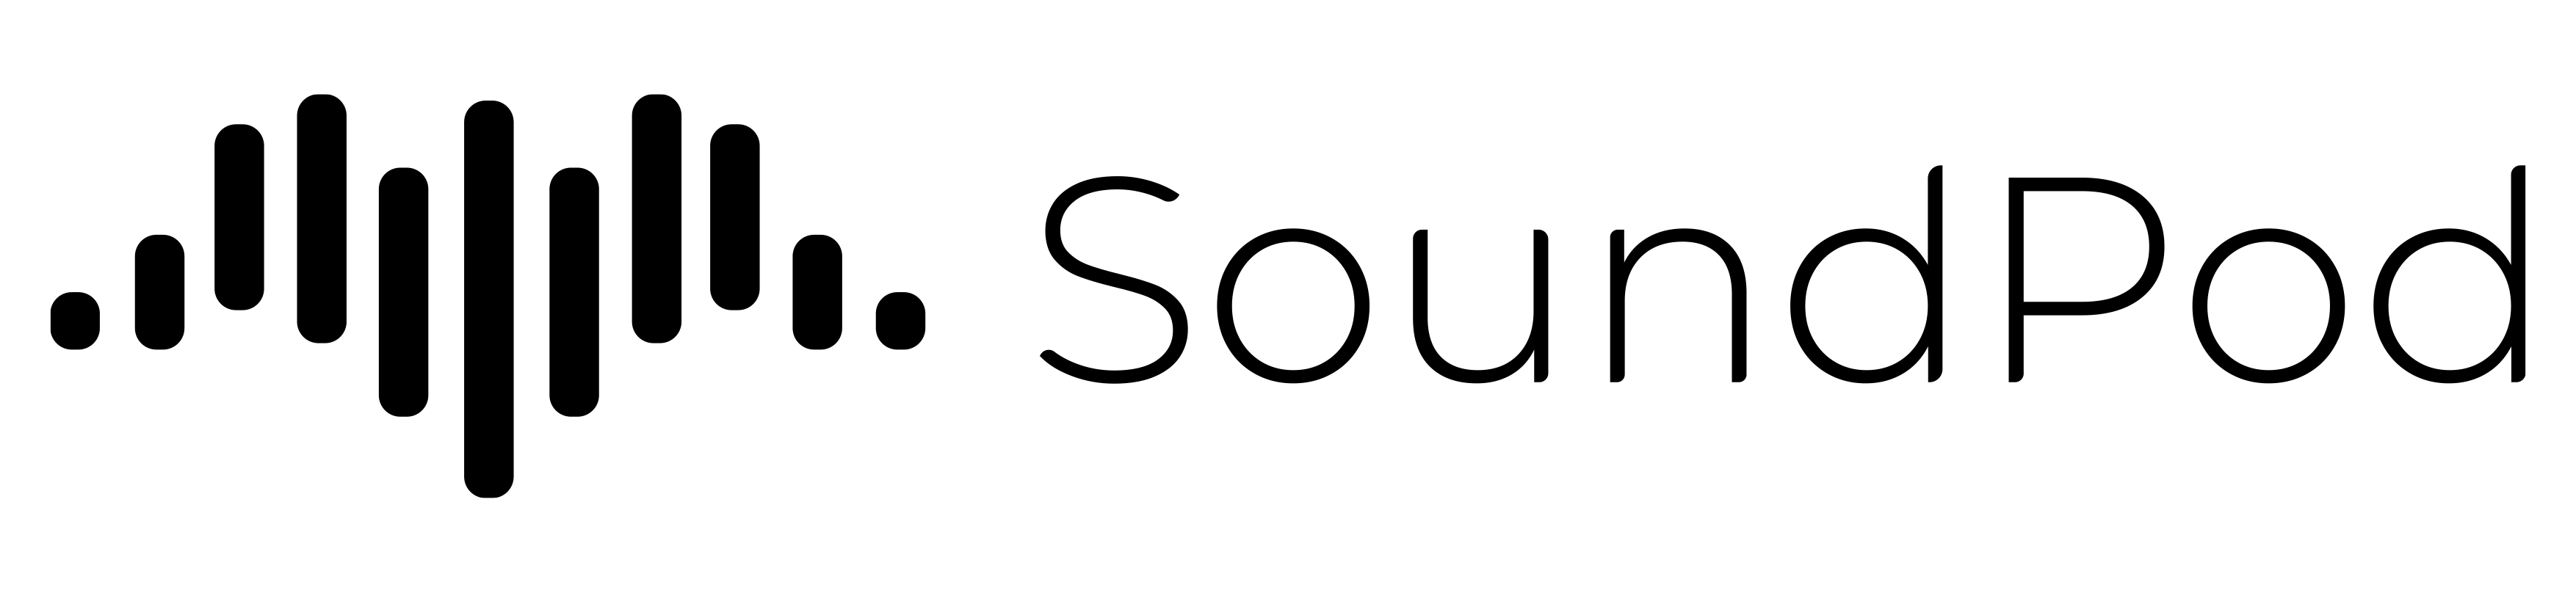 Logo - SoundPod_Black